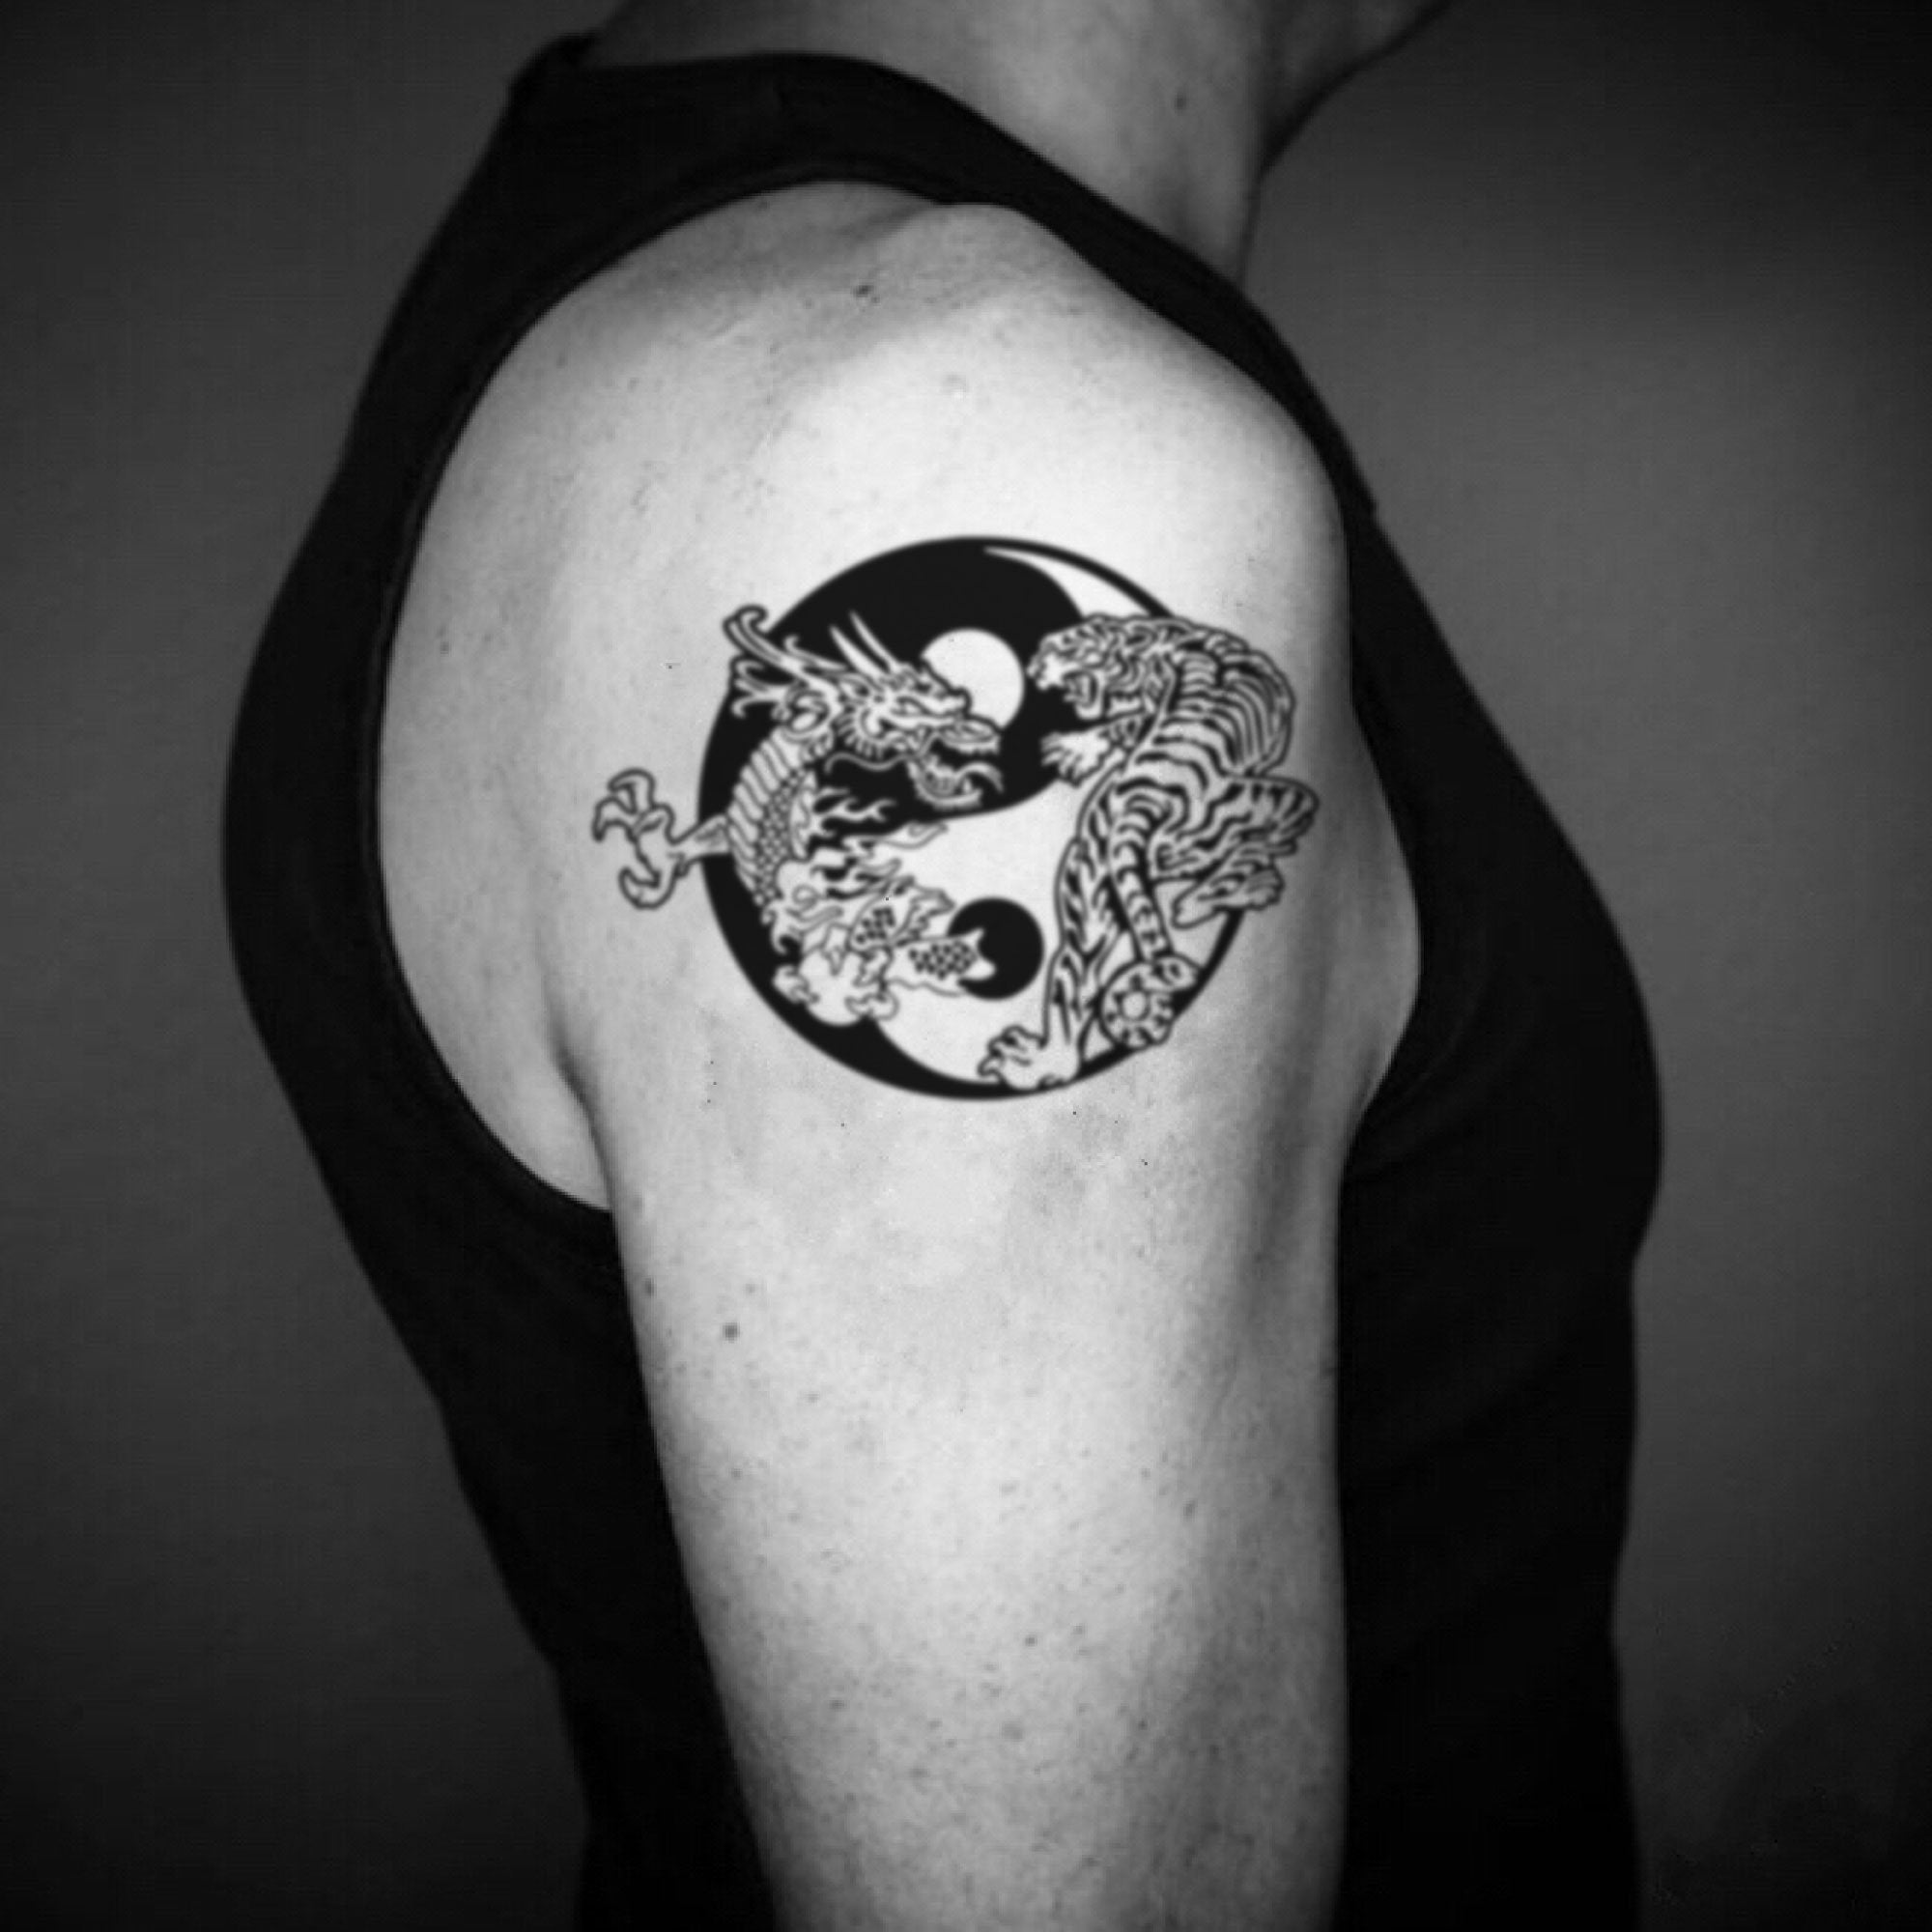 Tattoo uploaded by Tat2tiger • Dragon/Tiger chest tattoo • Tattoodo